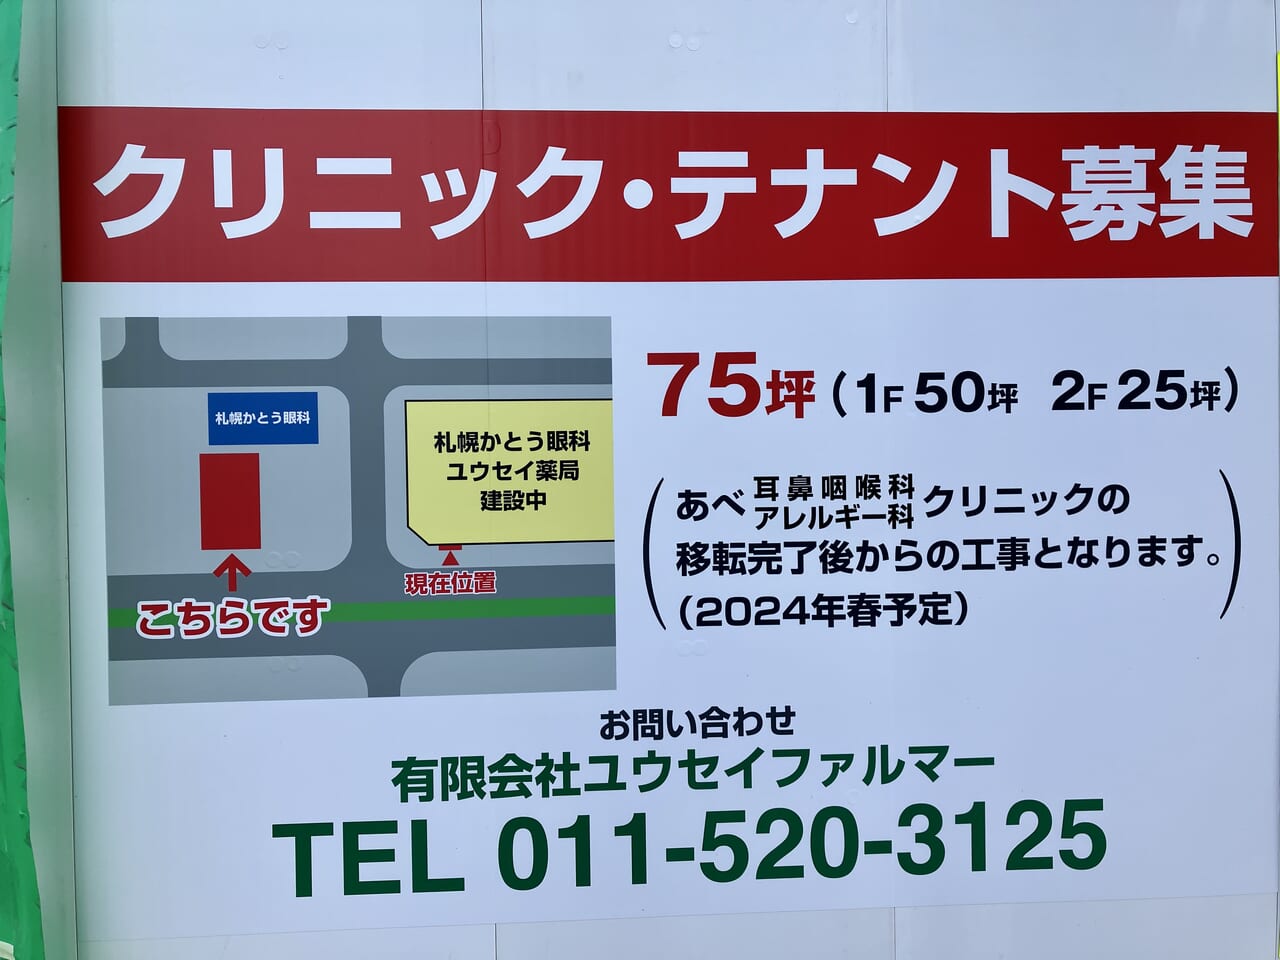 「イオン札幌元町」向かいの建設工事現場。何ができるのかわかりましたよ。